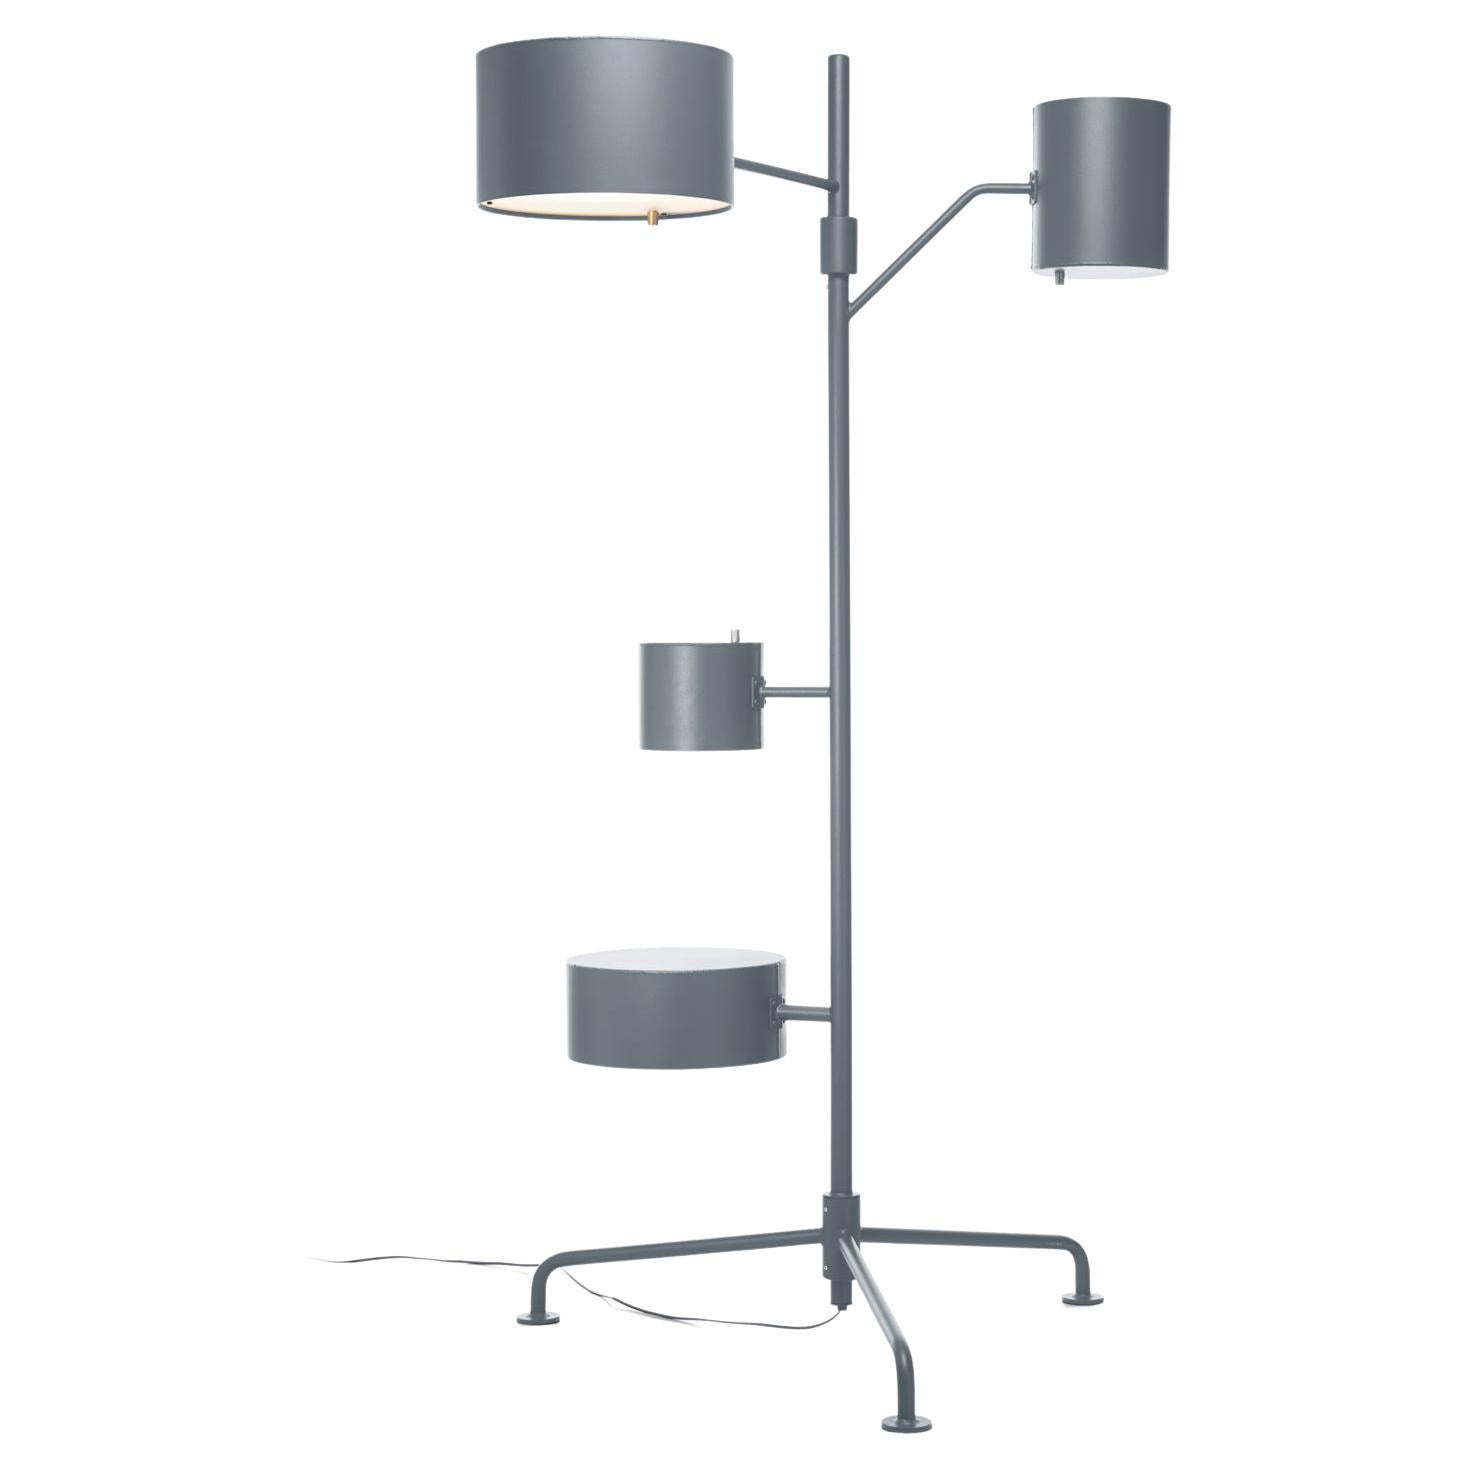 Lampadaire LED Statistocrat de Moooi en aluminium laqué gris argenté mat